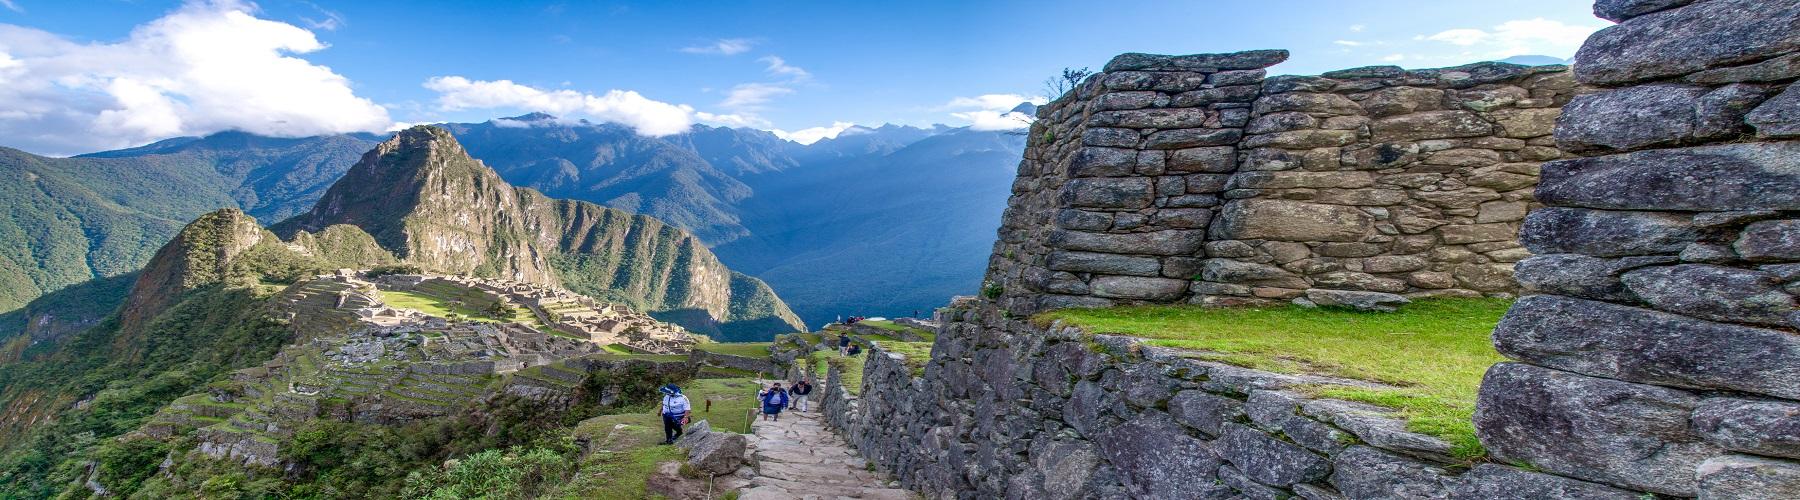 Путешествие в Перу, одна из самых экзотических и загадочных стран мира